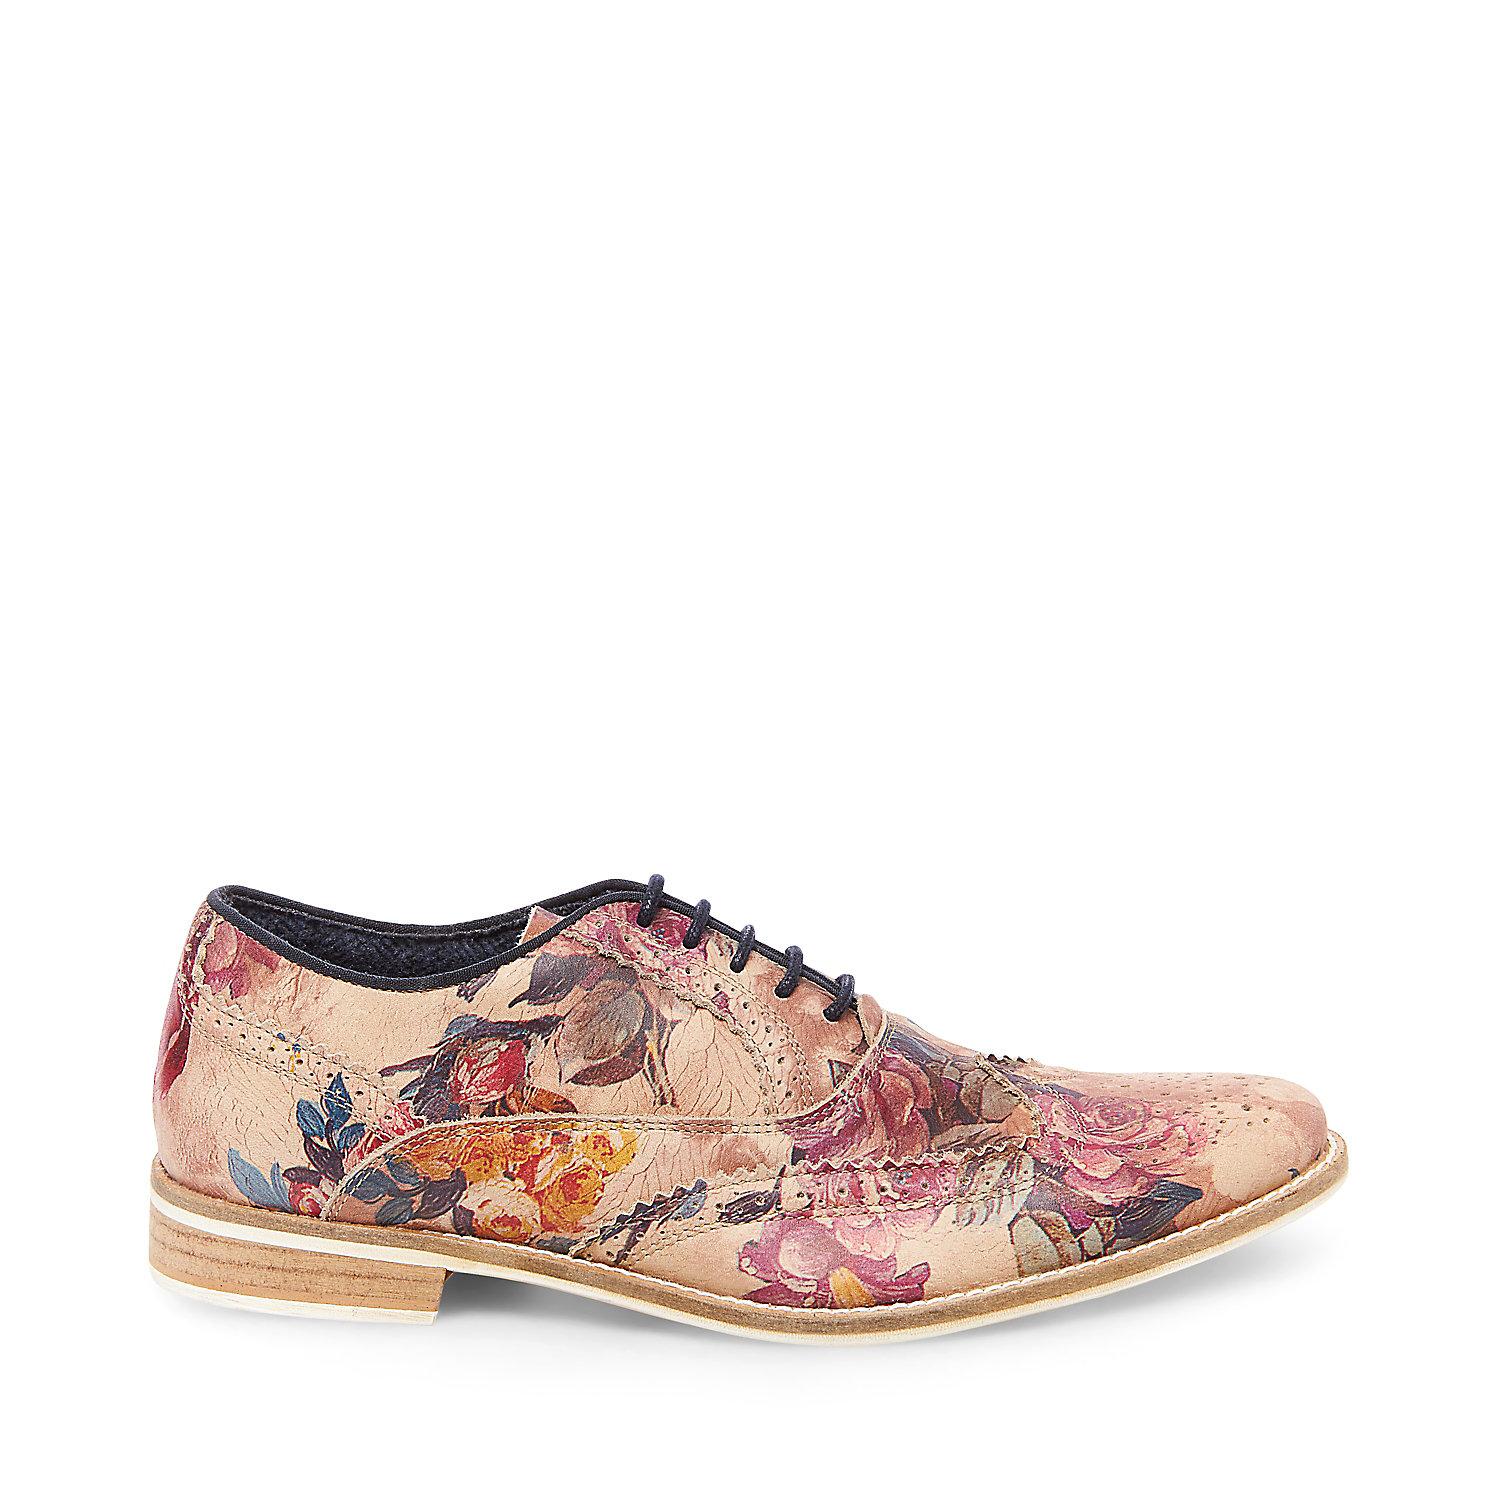 steve madden floral shoes